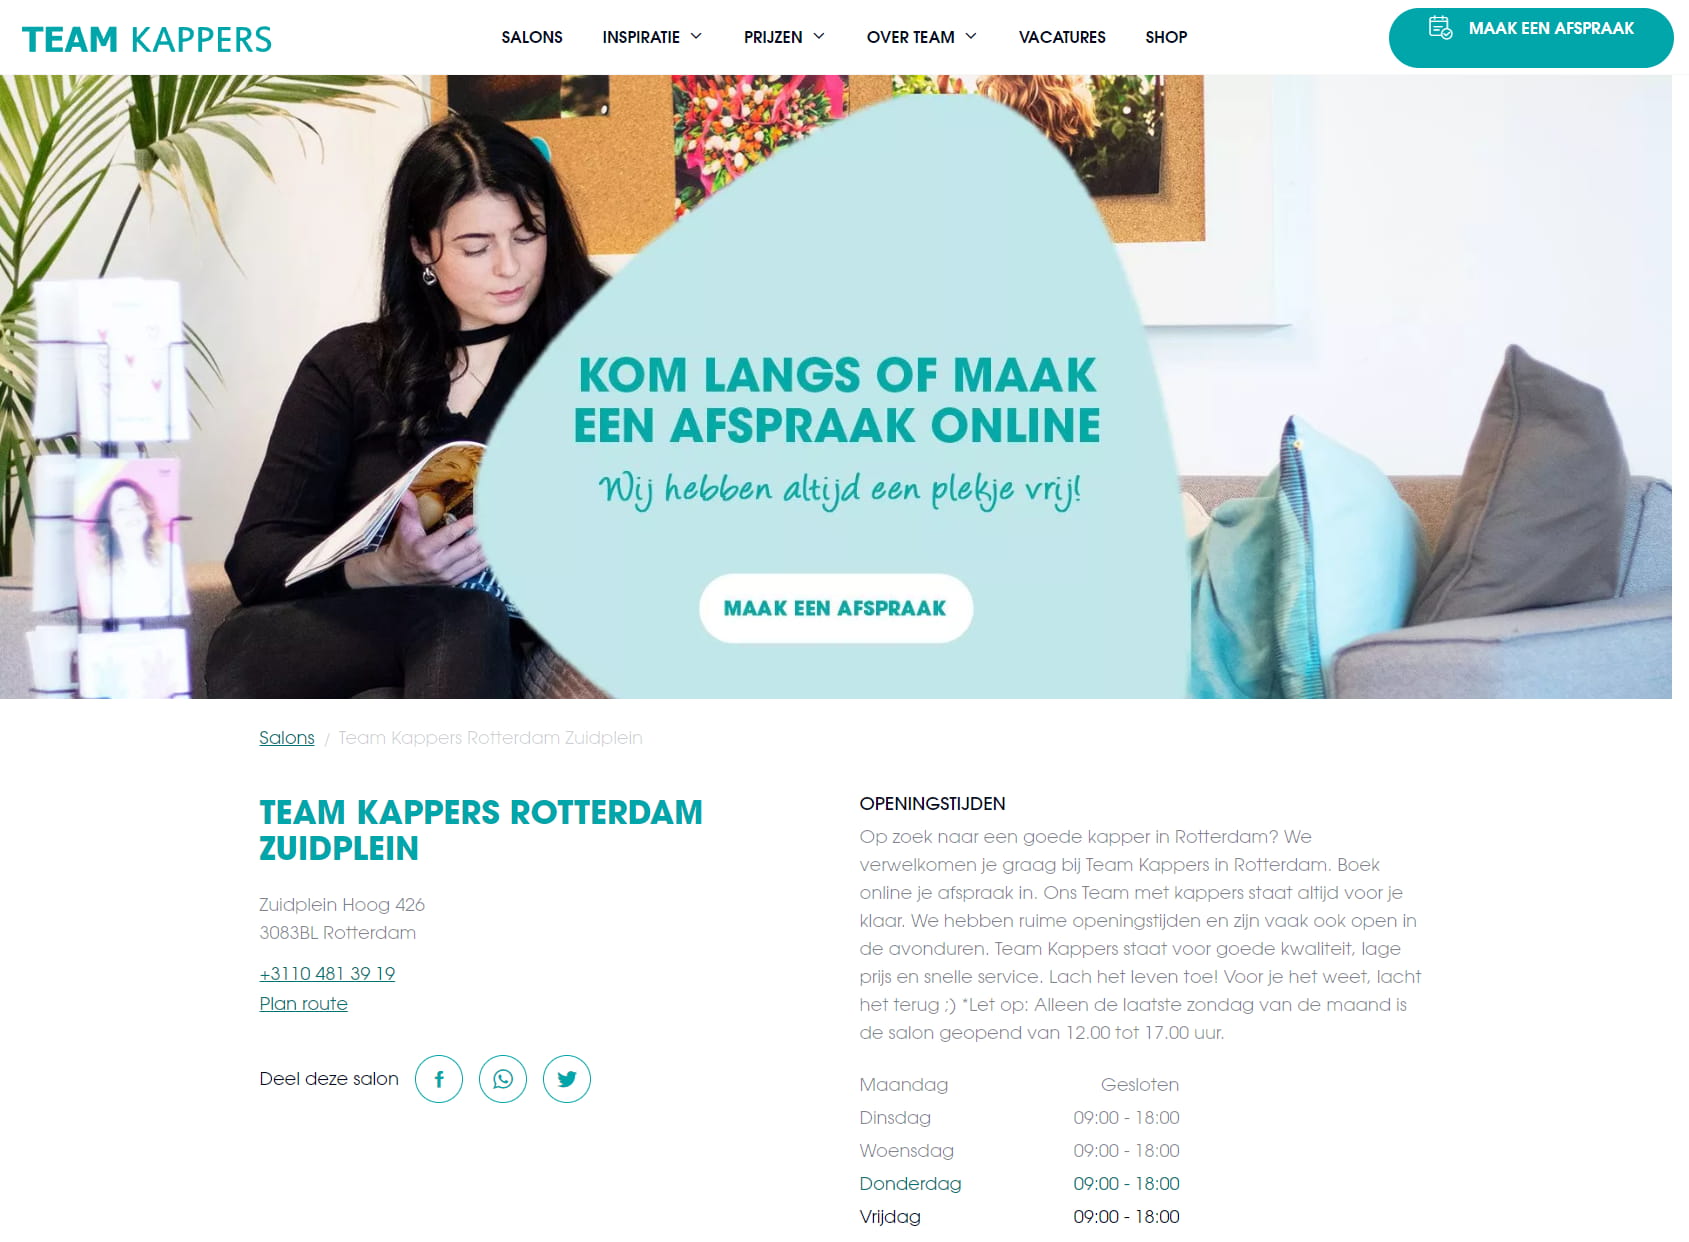 Team Kappers Rotterdam Zuidplein